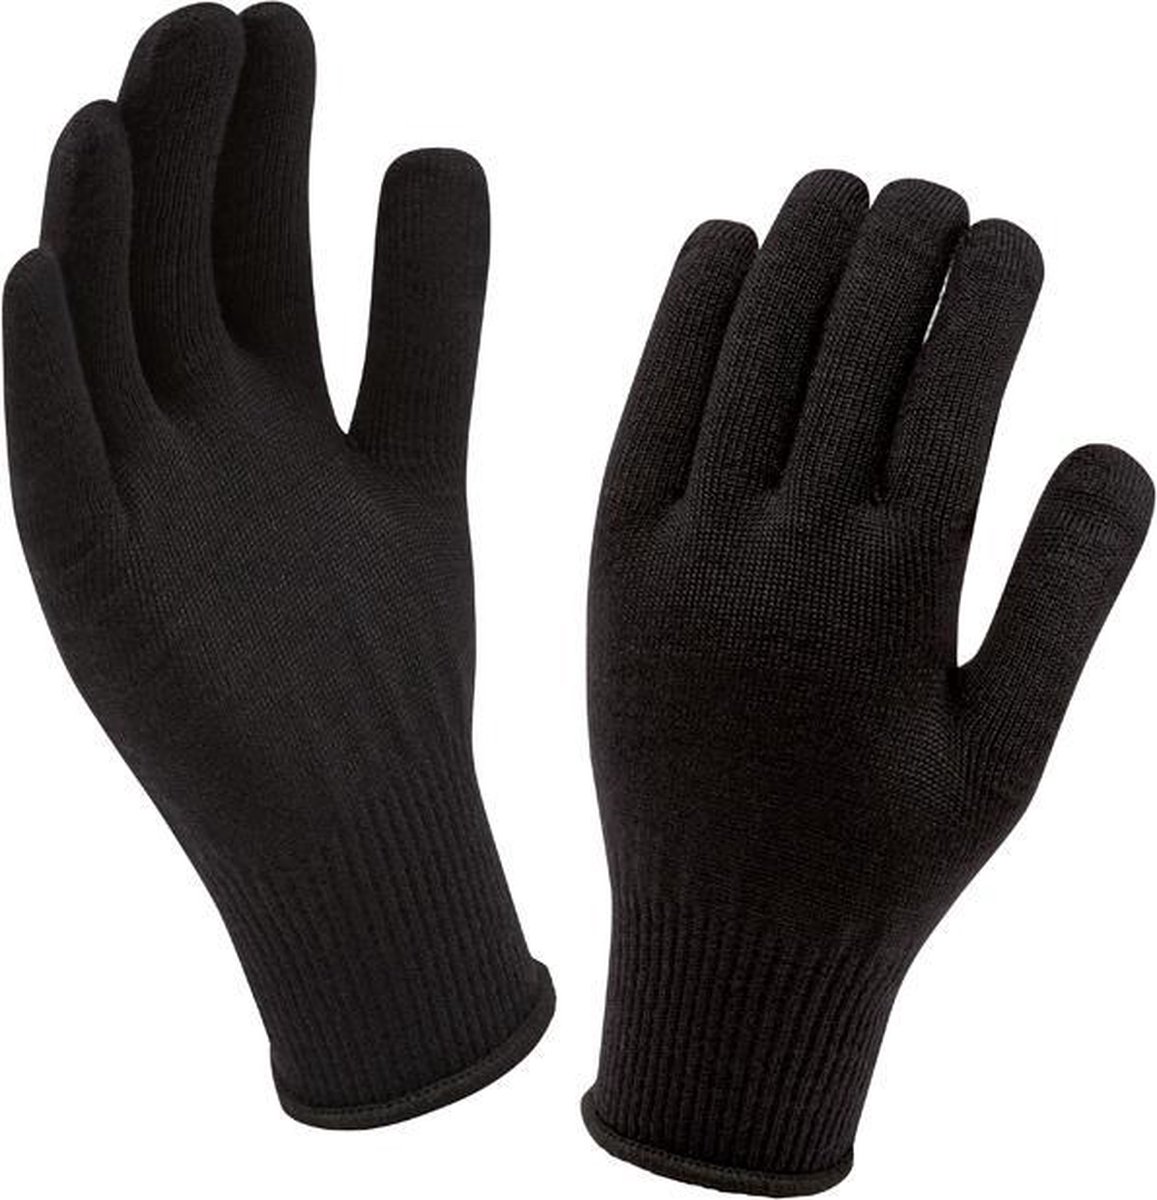 Sealskinz Merino Glove - Fietshandschoenen - Heren - Universeel - Liner Black - Sealskinz